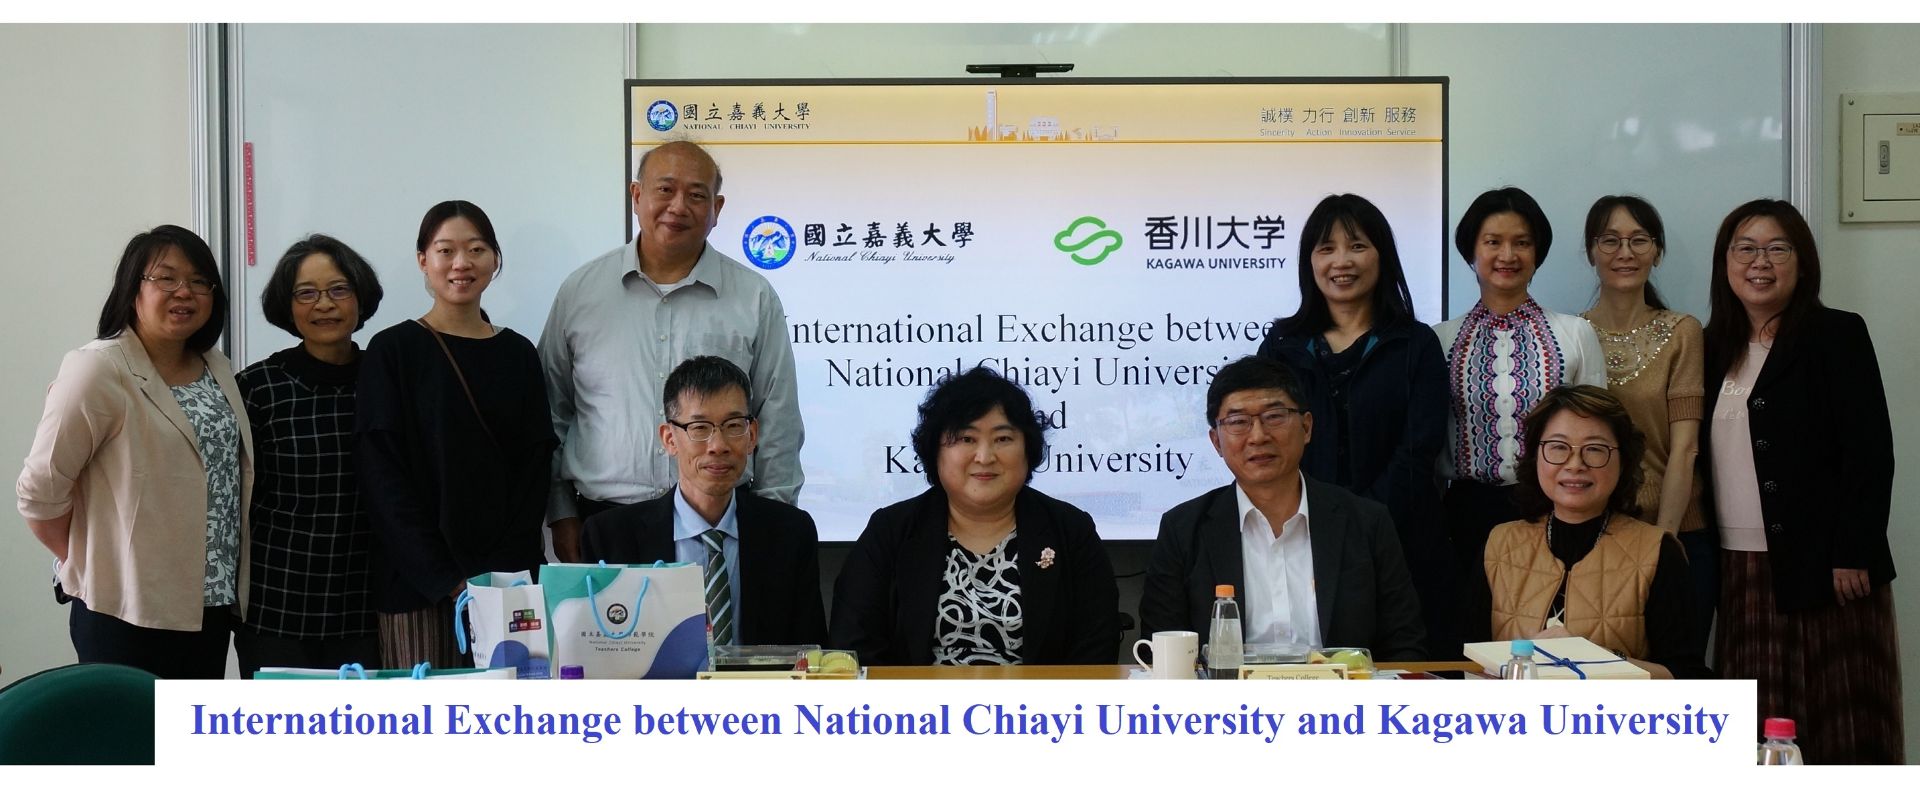 International Exchange between National Chiayi University and Kagawa University